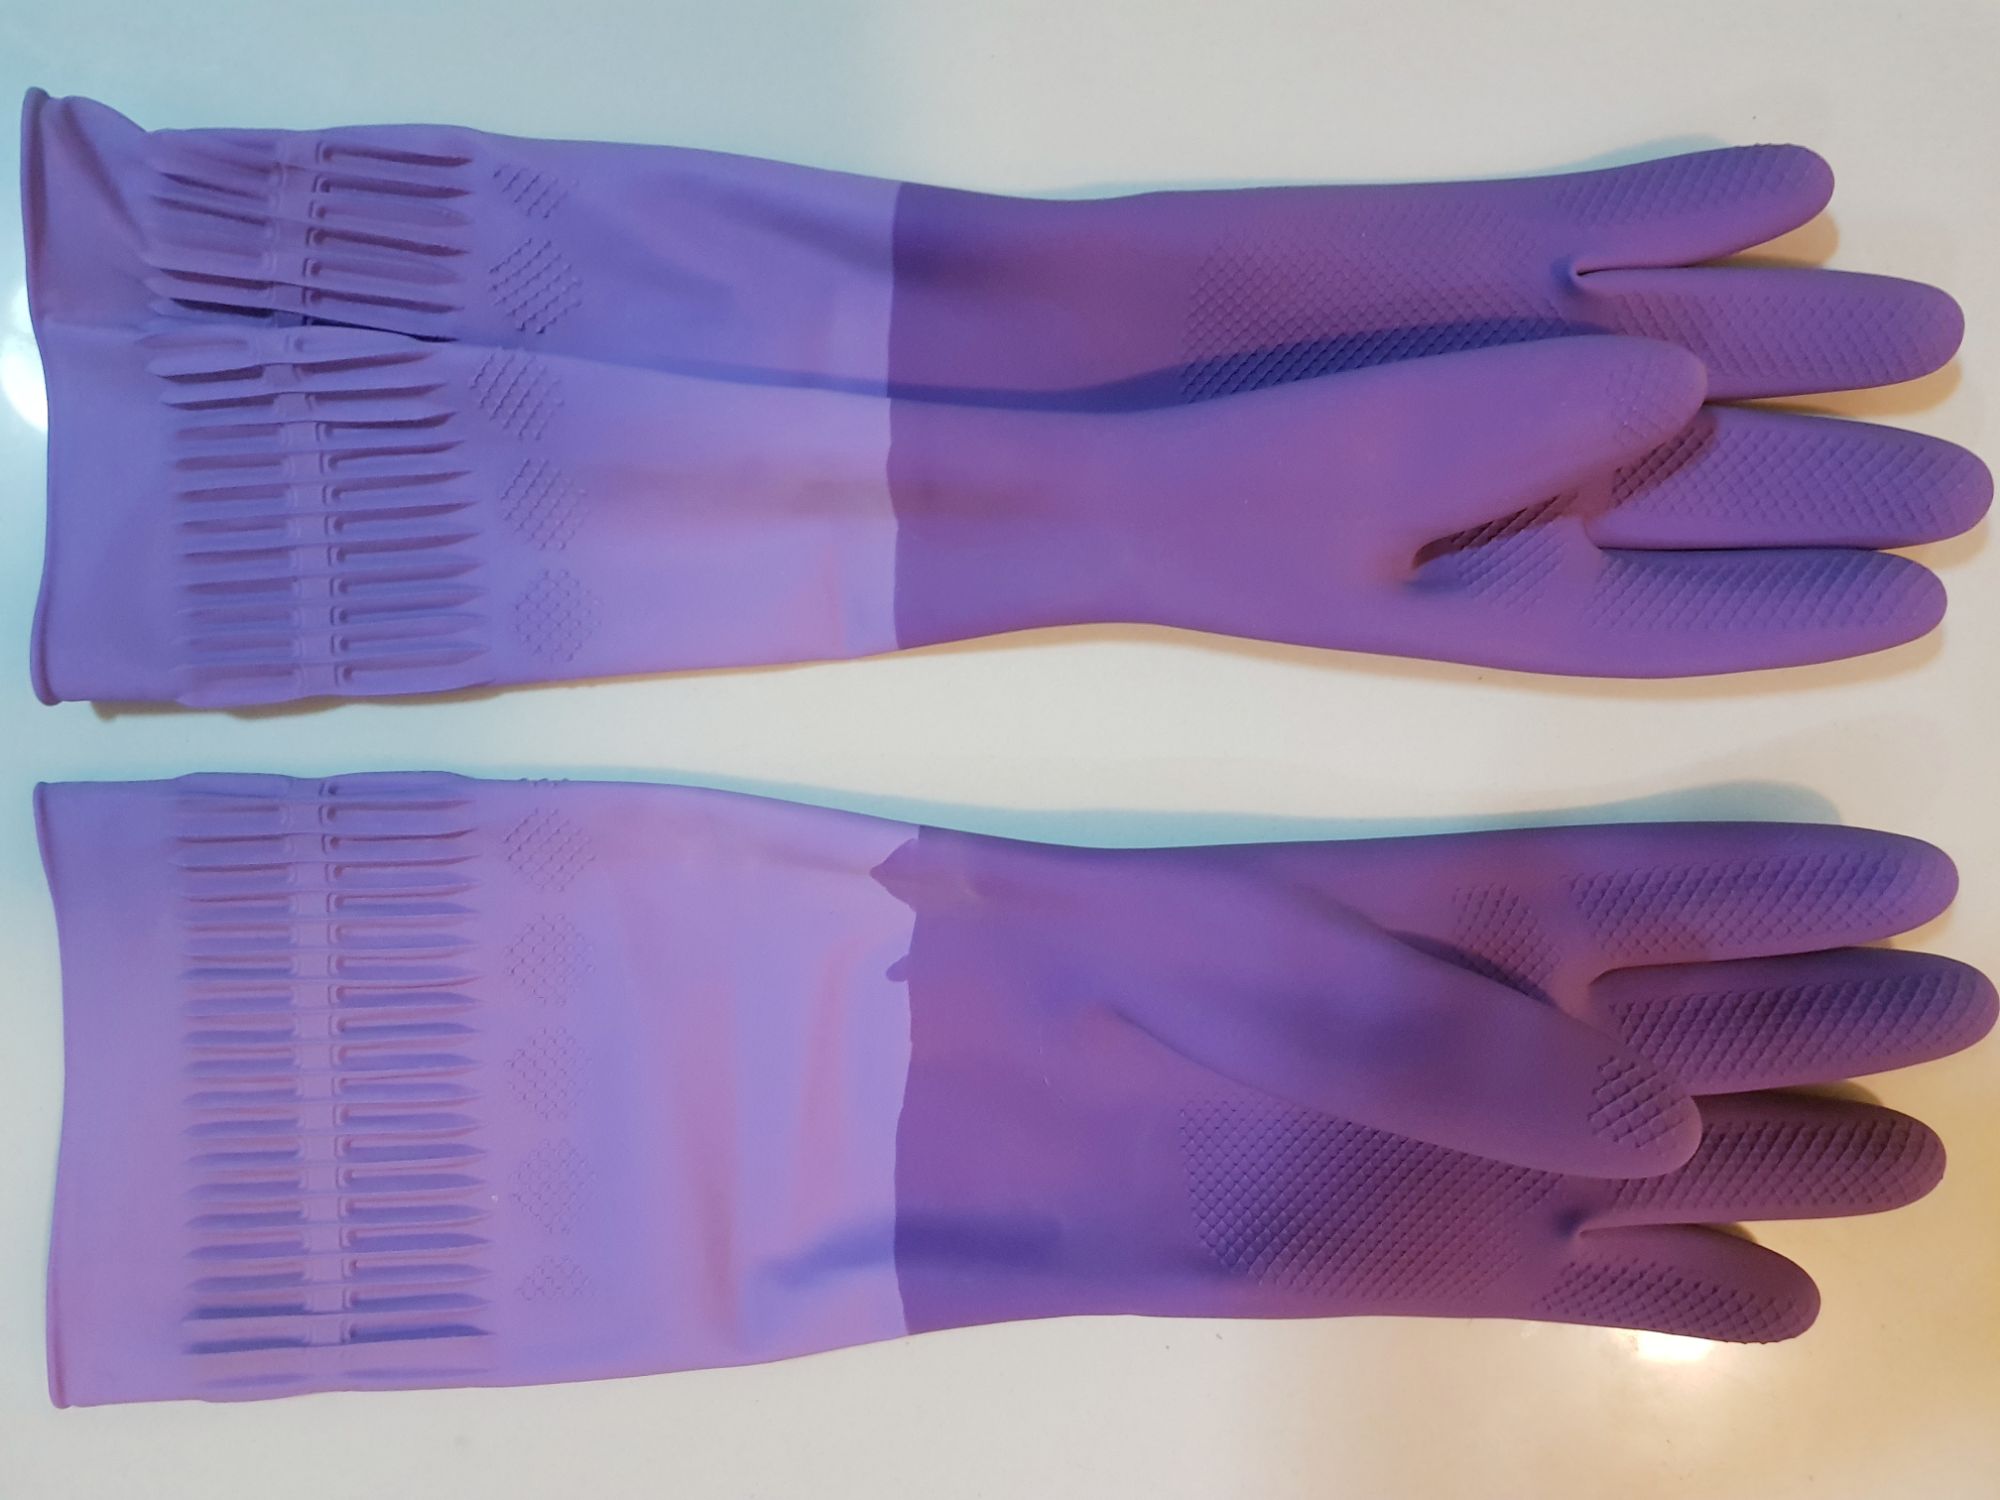 ถุงมือยางยาวสีม่วง ทำความสะอาดอเนกประสงค์ ถุงมือล้างจาน ถุงมือยางเอ็นยาว หนาทนทานกันน้ำได้ (เบอร์8(M) ยาว35cm , เบอร์9(L) ยาว38cm)